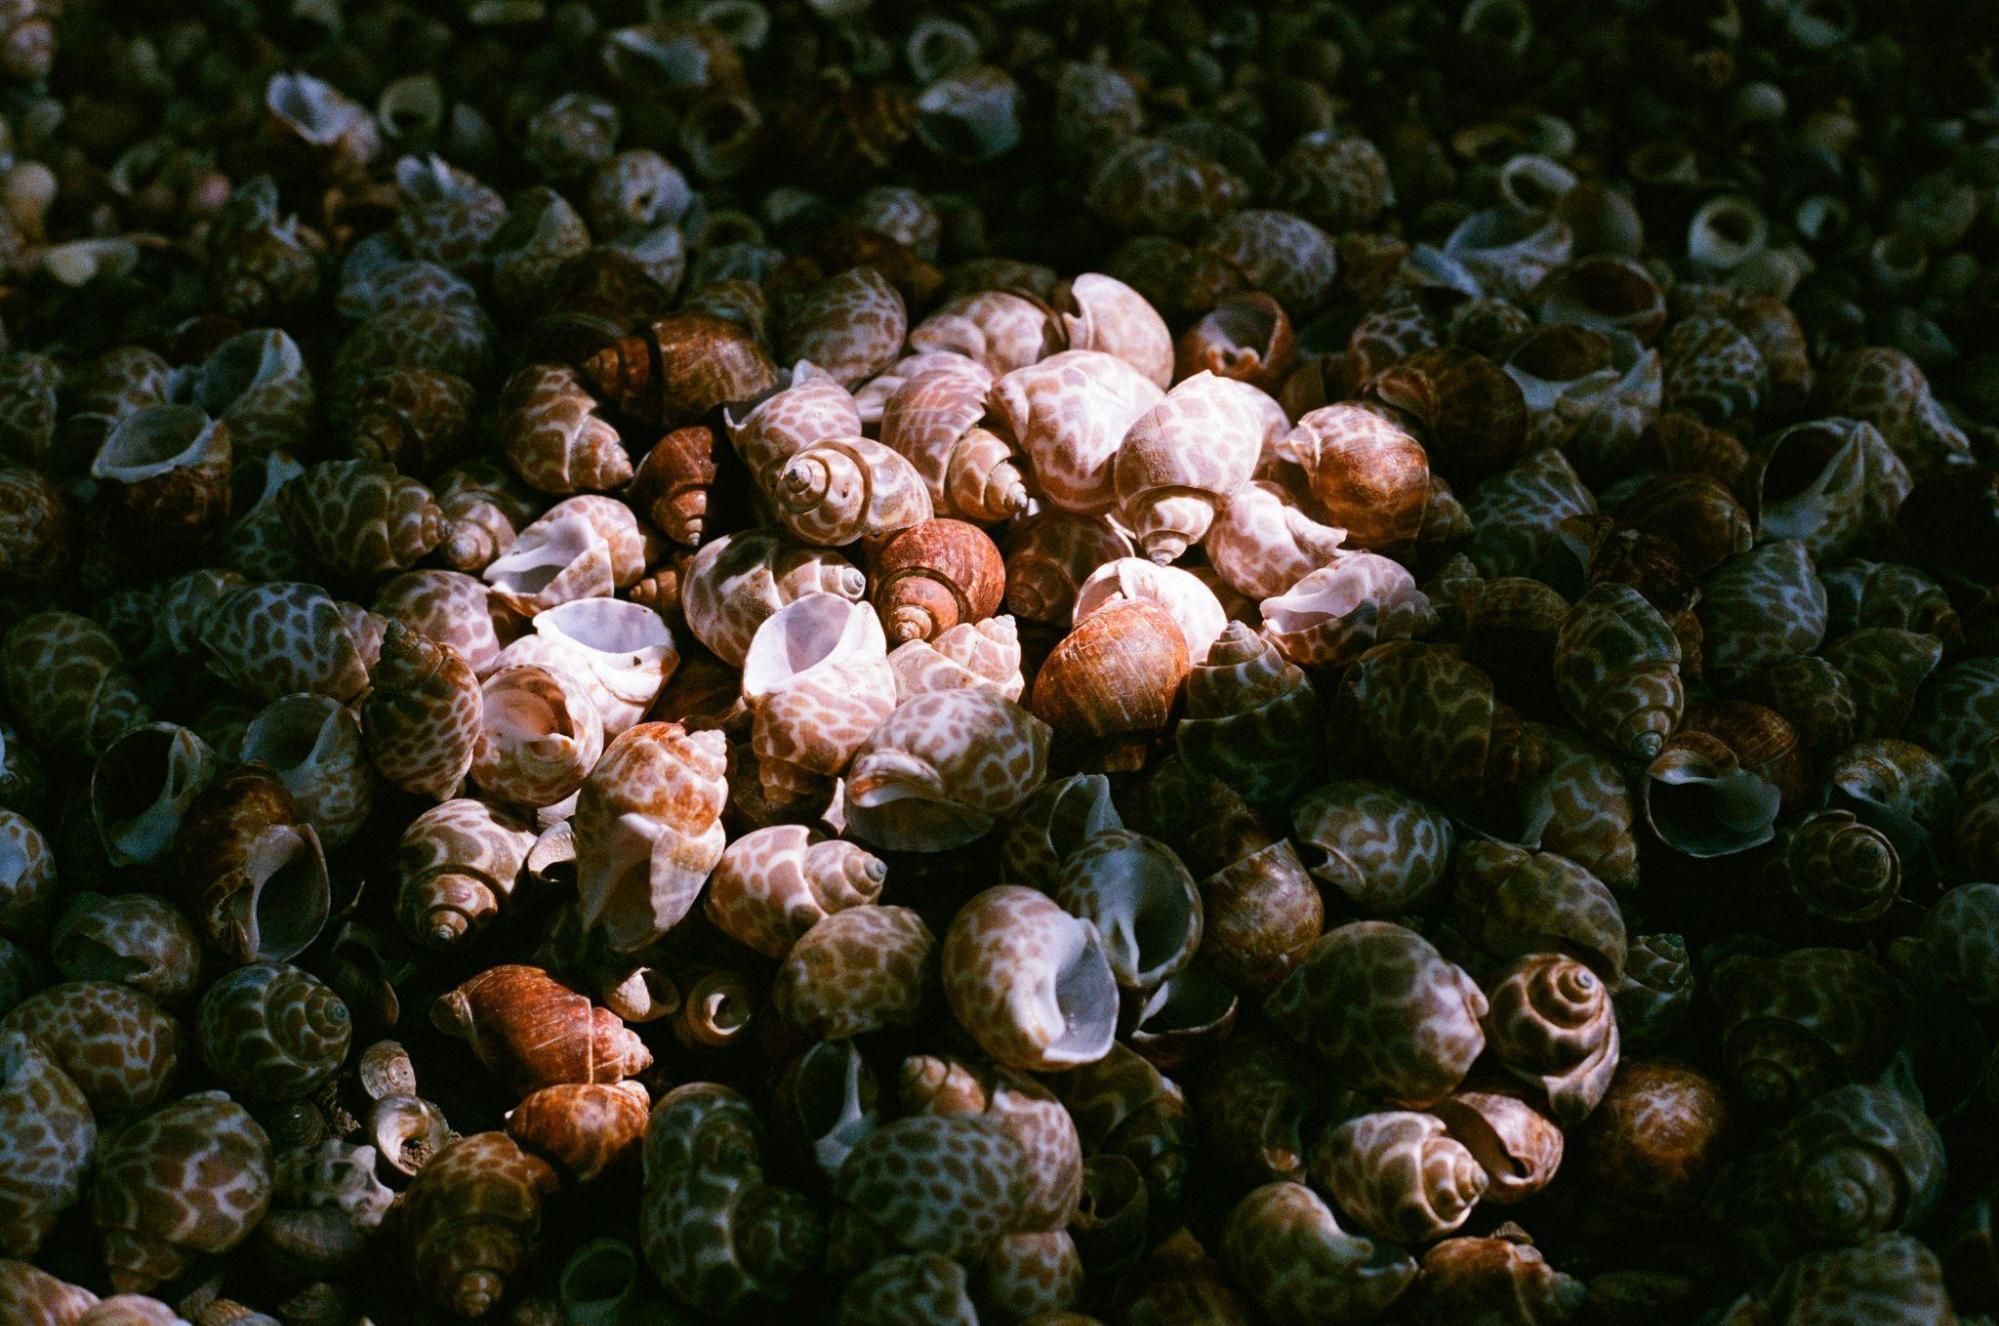 寄居蟹換殼中心提供各式各樣、不同大小的殼。敏迪提供